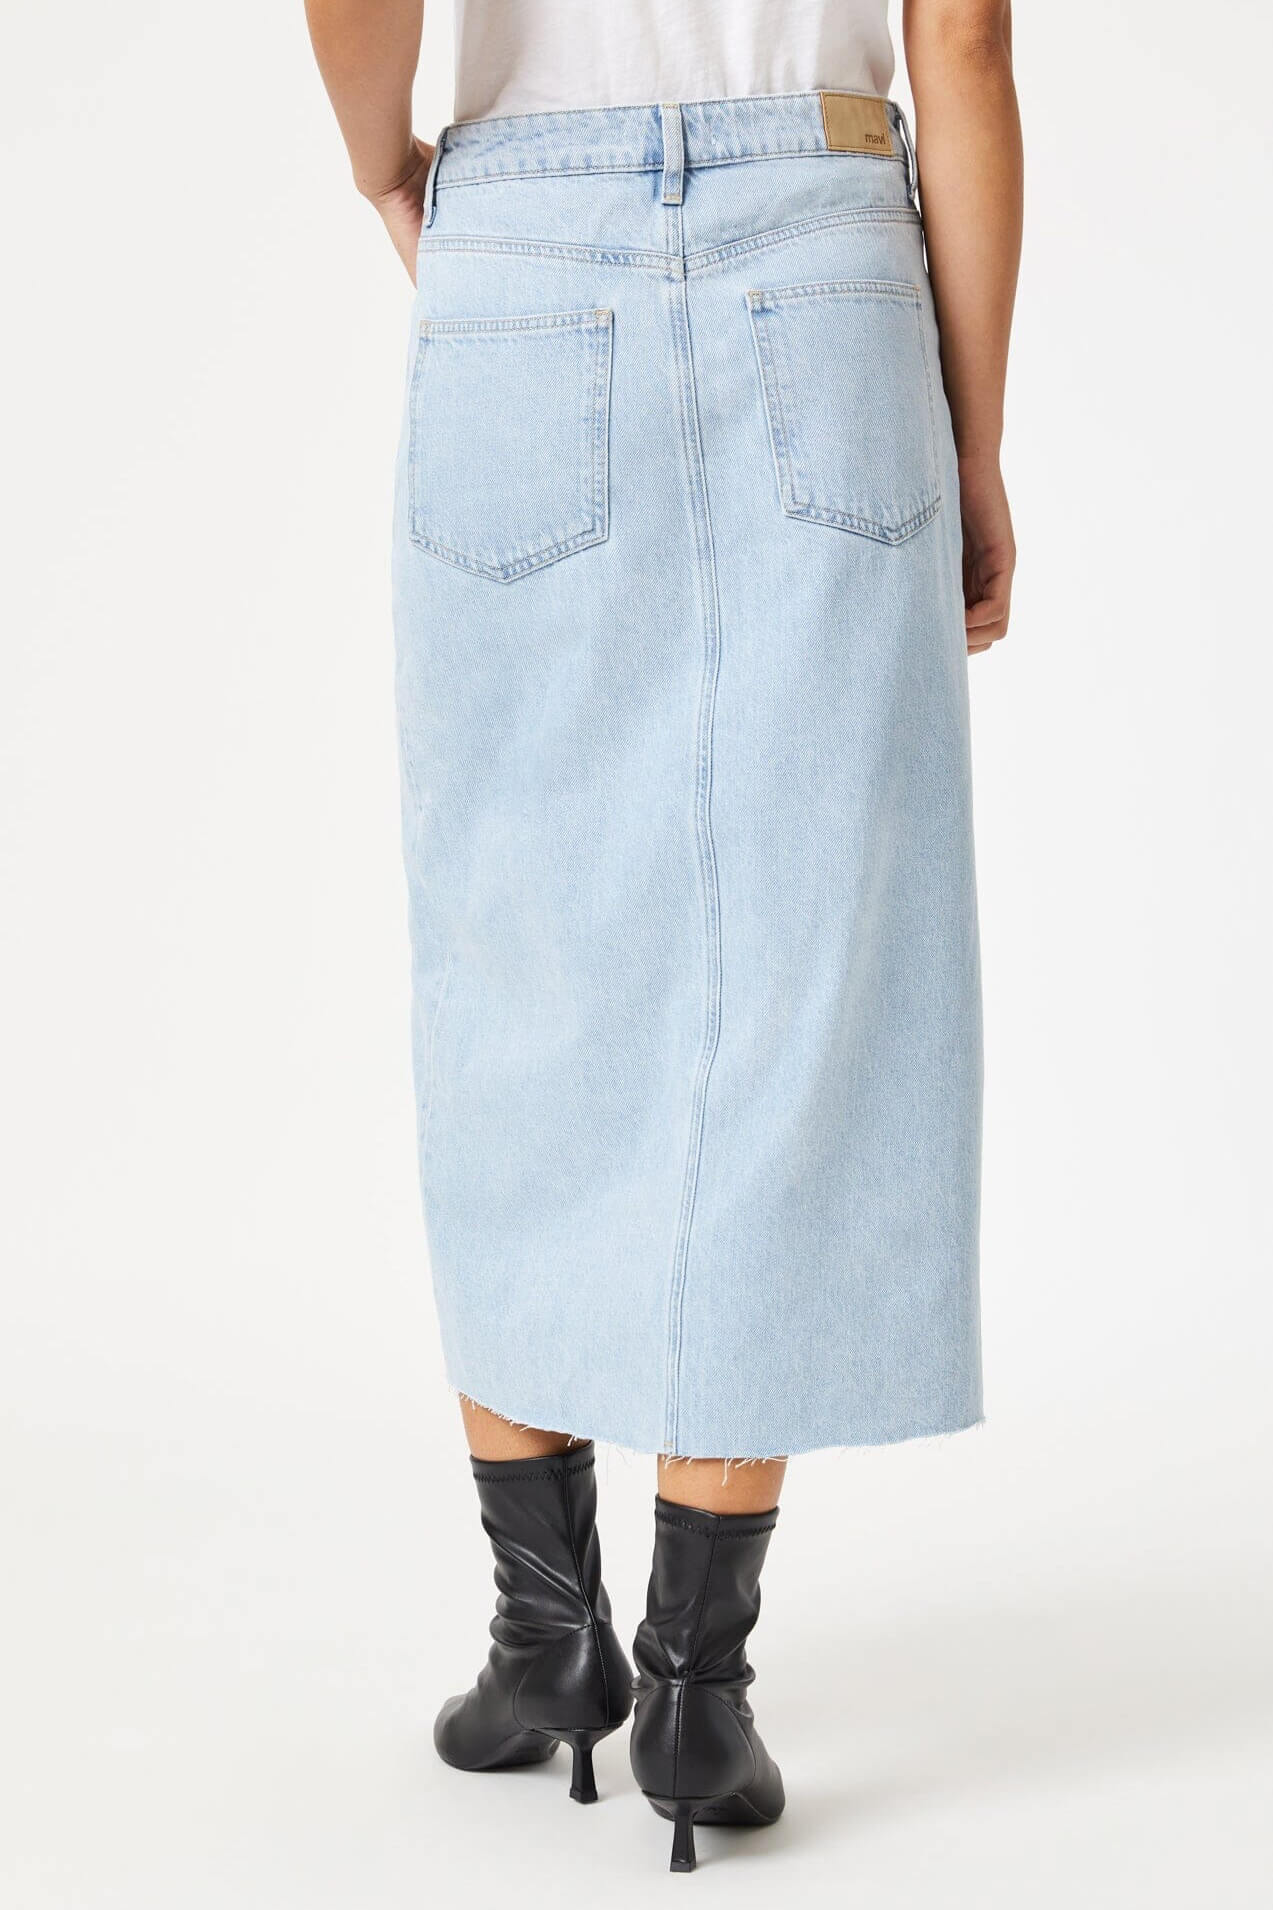 Mavi Jeans Marin denim skirt in bleached denim